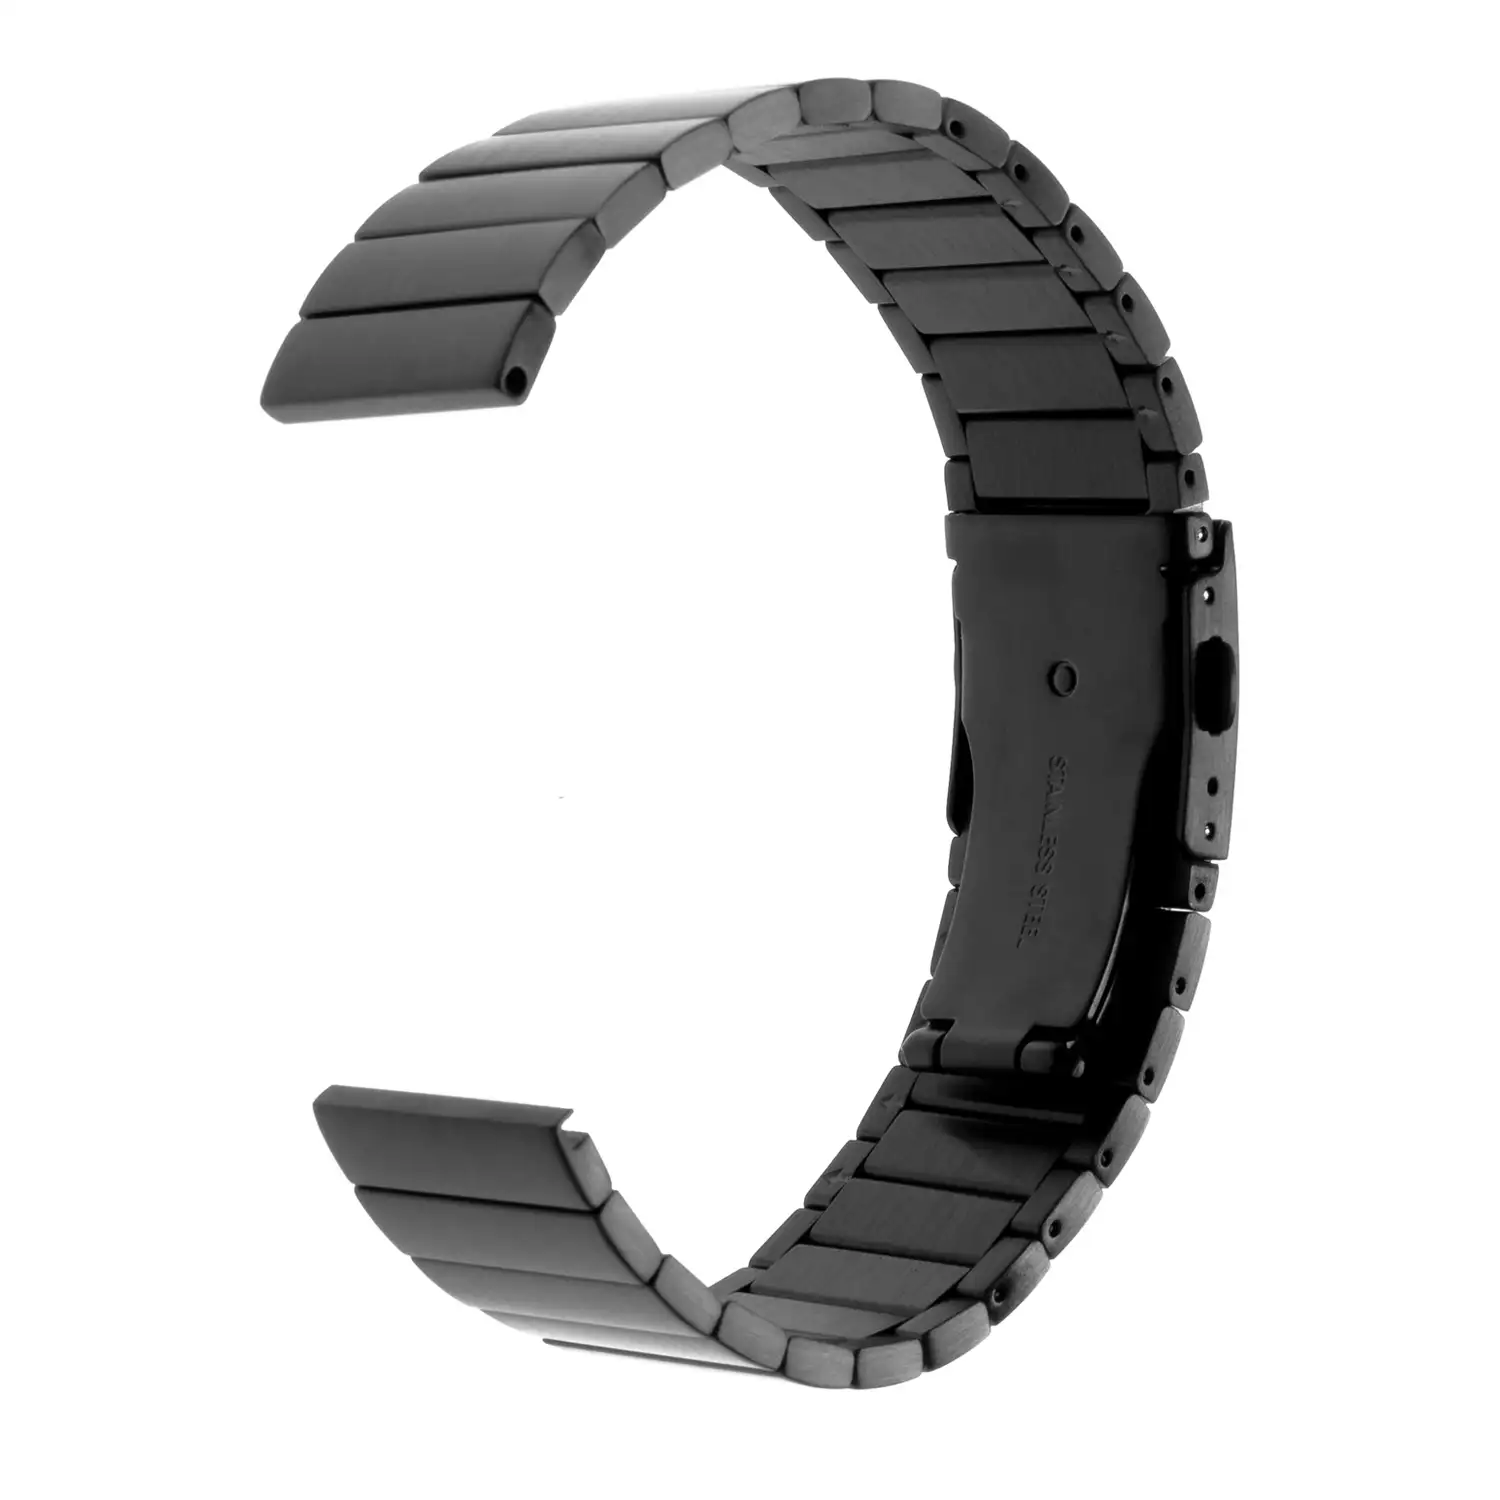 Correa universal de acero inoxidable para relojes de 22mm.Sistema Quick Release de fácil cambio.